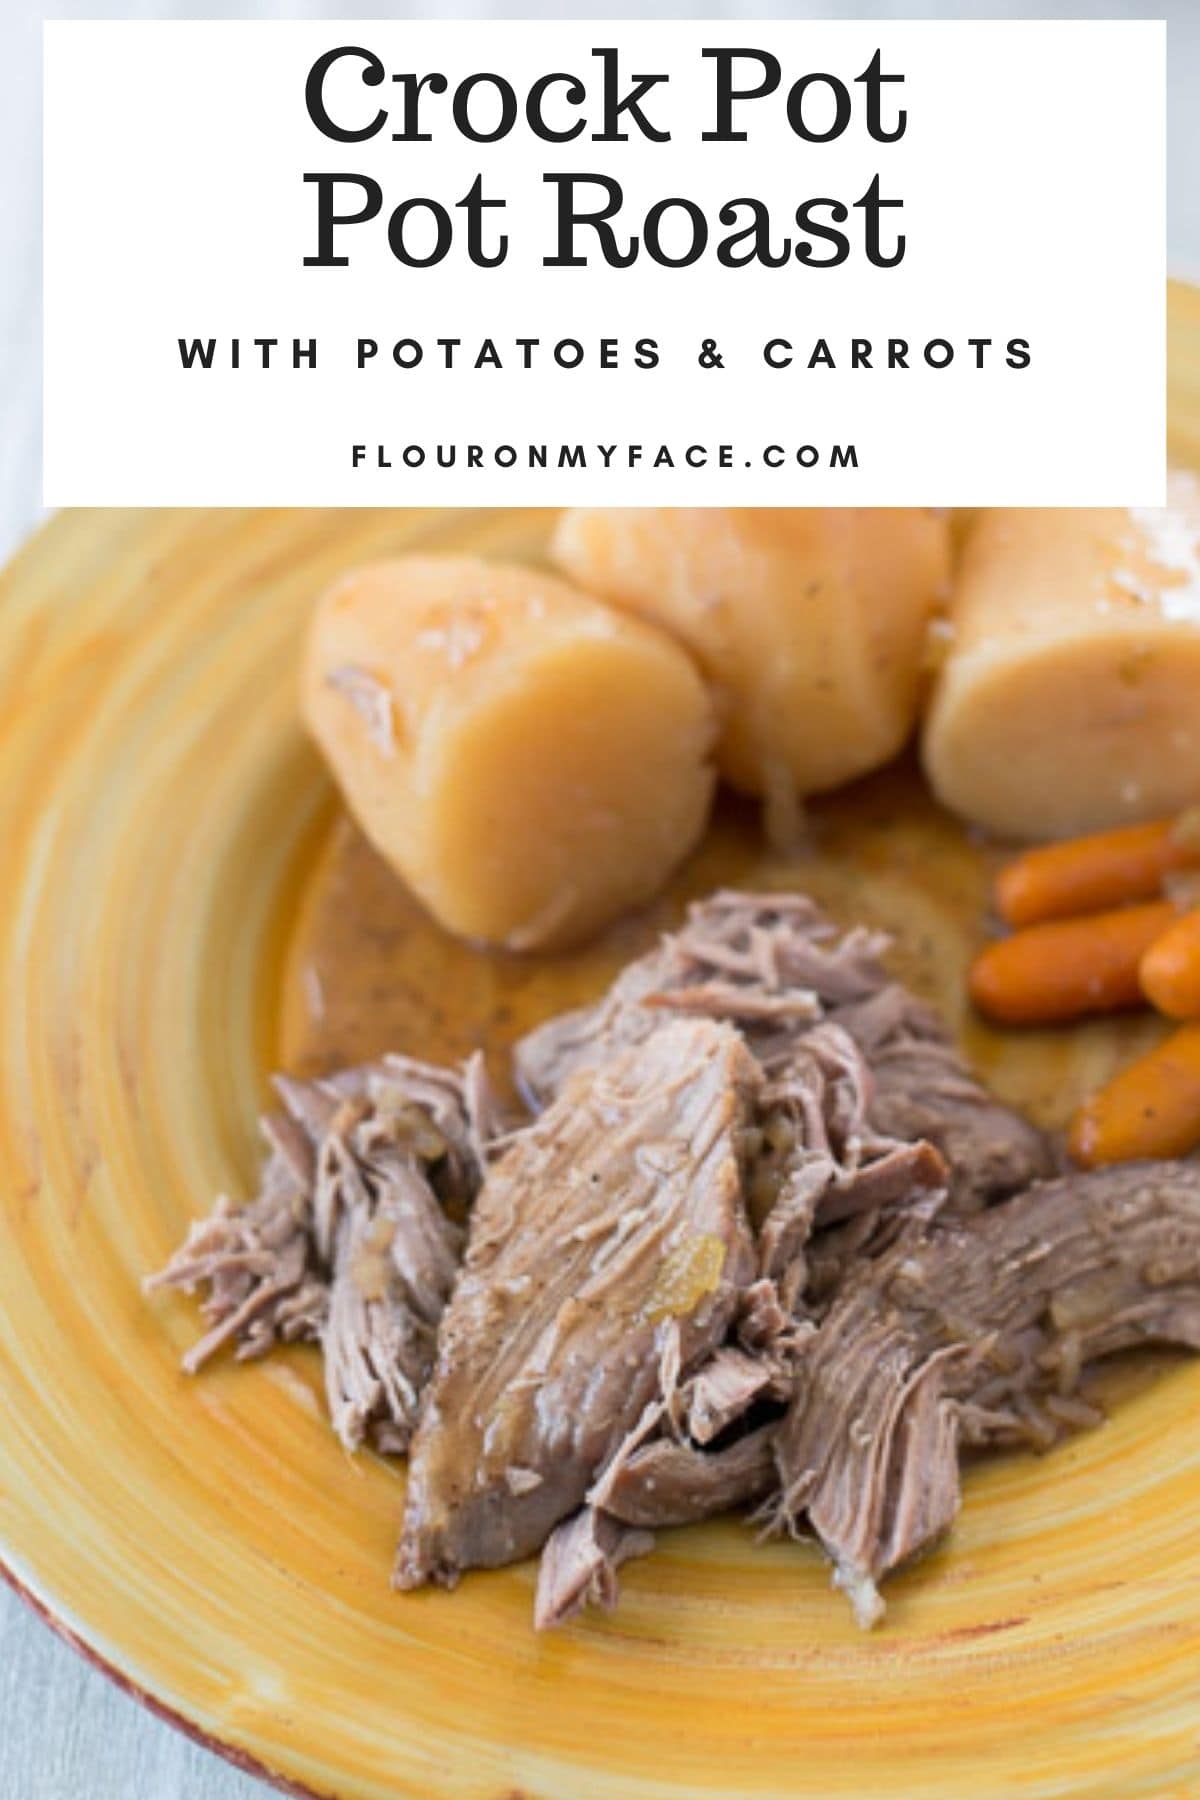 Crock Pot Pot Roast with Potatoes and carrots.